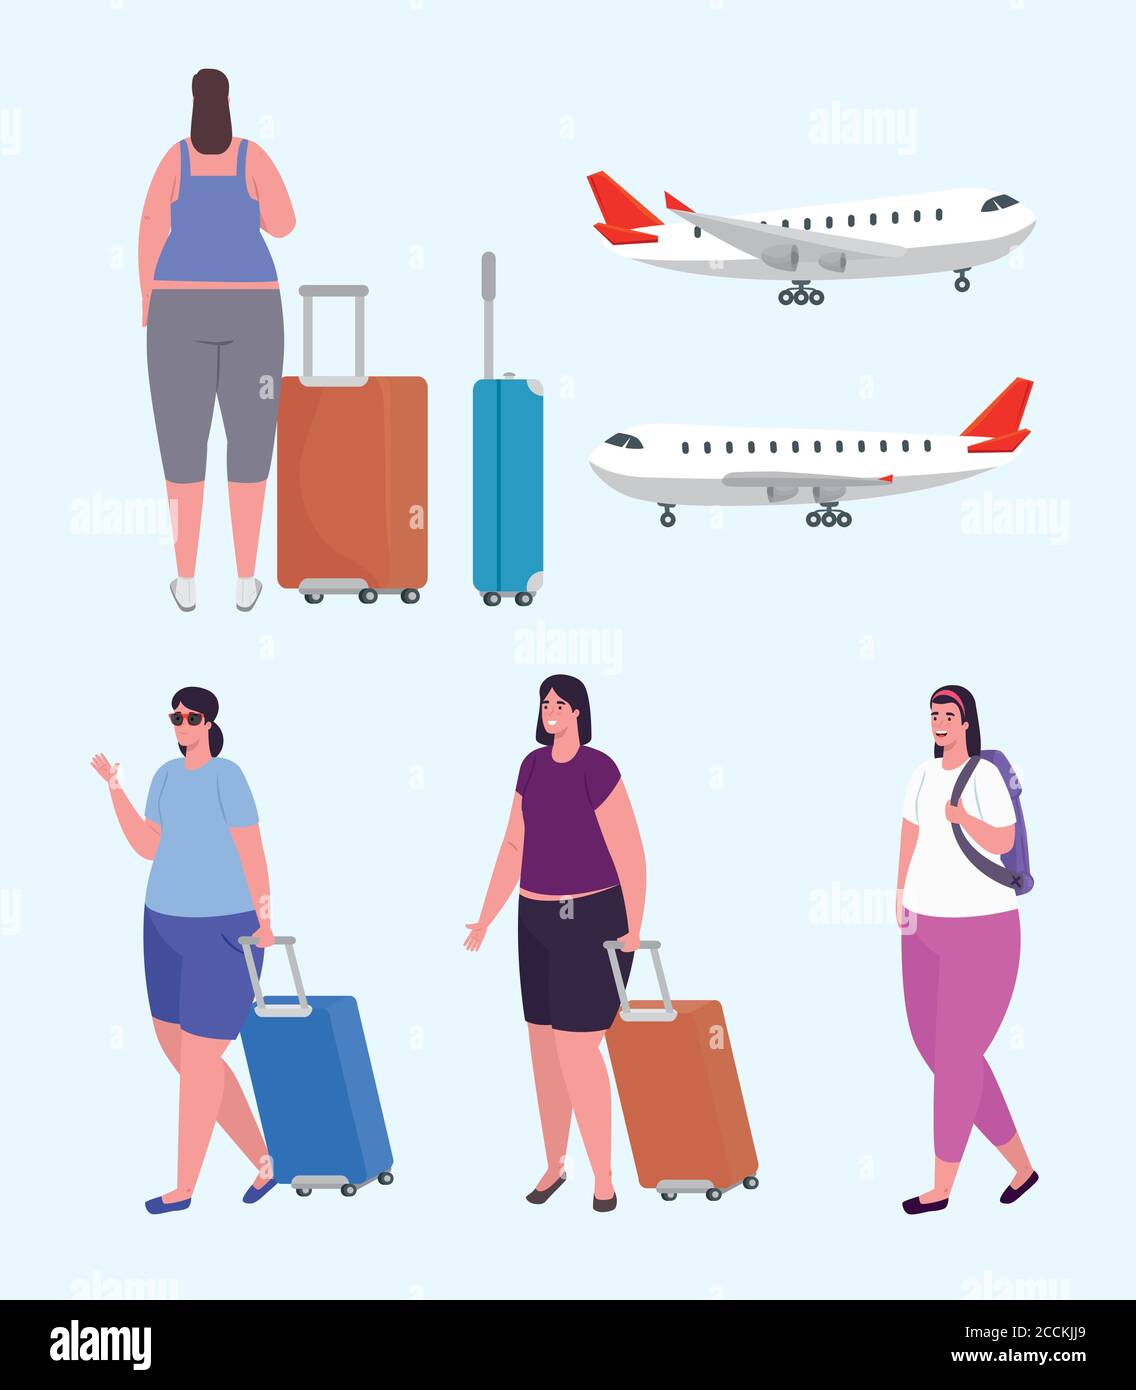 groupe de femmes voyageurs et grands avions commerciaux Illustration de Vecteur